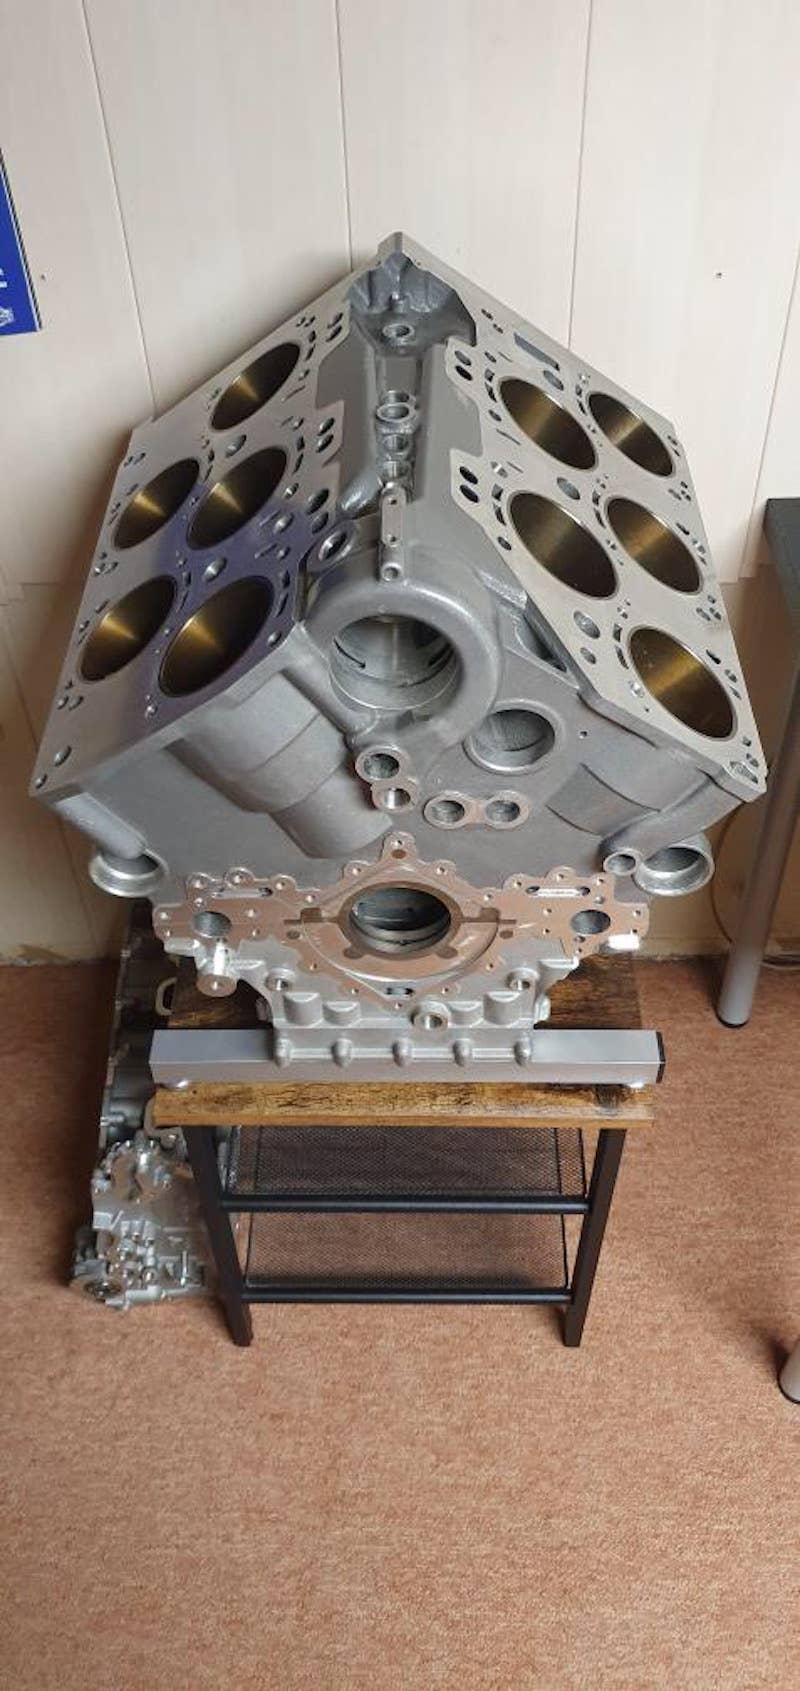 Volkswagen W10 engine prototype block, oblique view